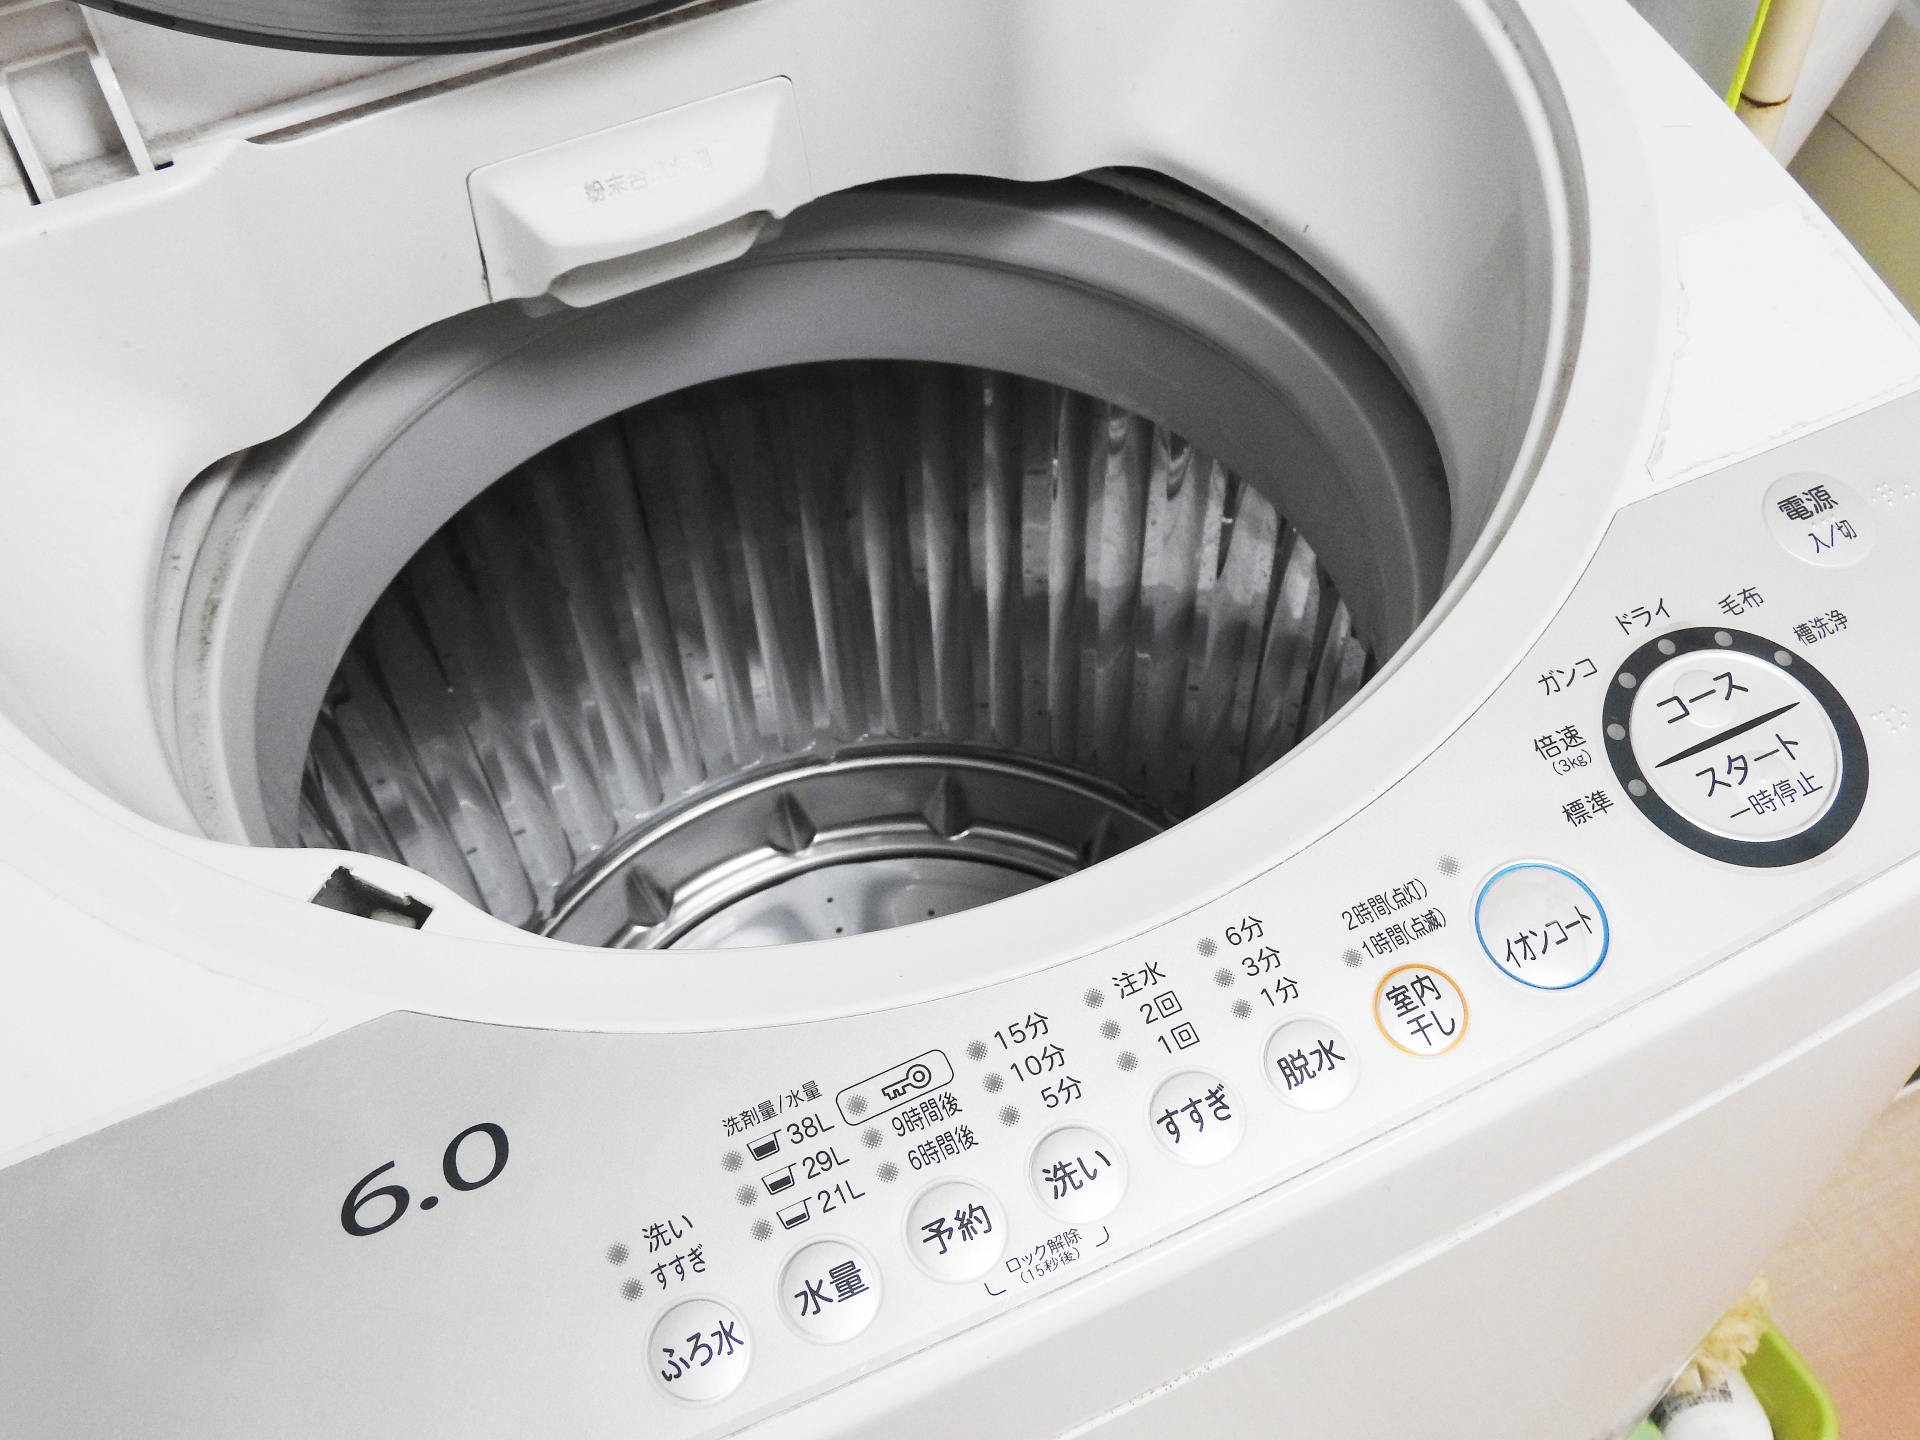 ニットは洗濯機ならネットを使う理由や安心して洗うコツ